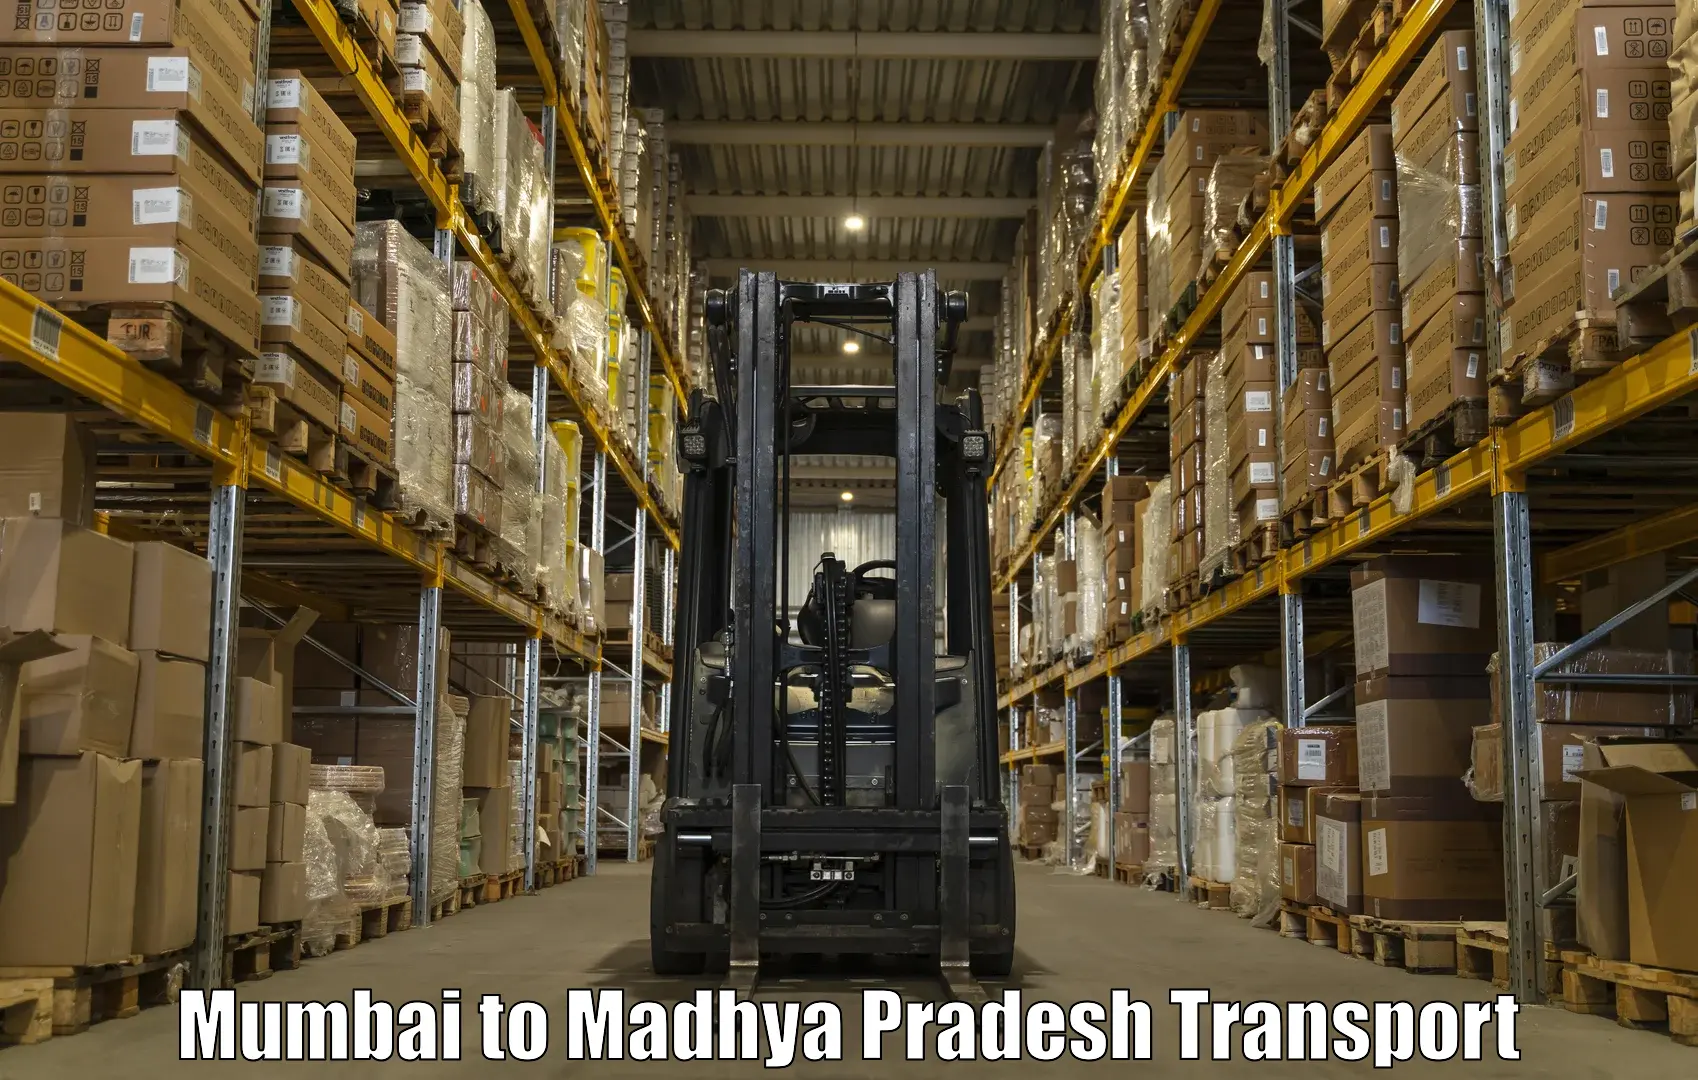 Truck transport companies in India Mumbai to Barwani